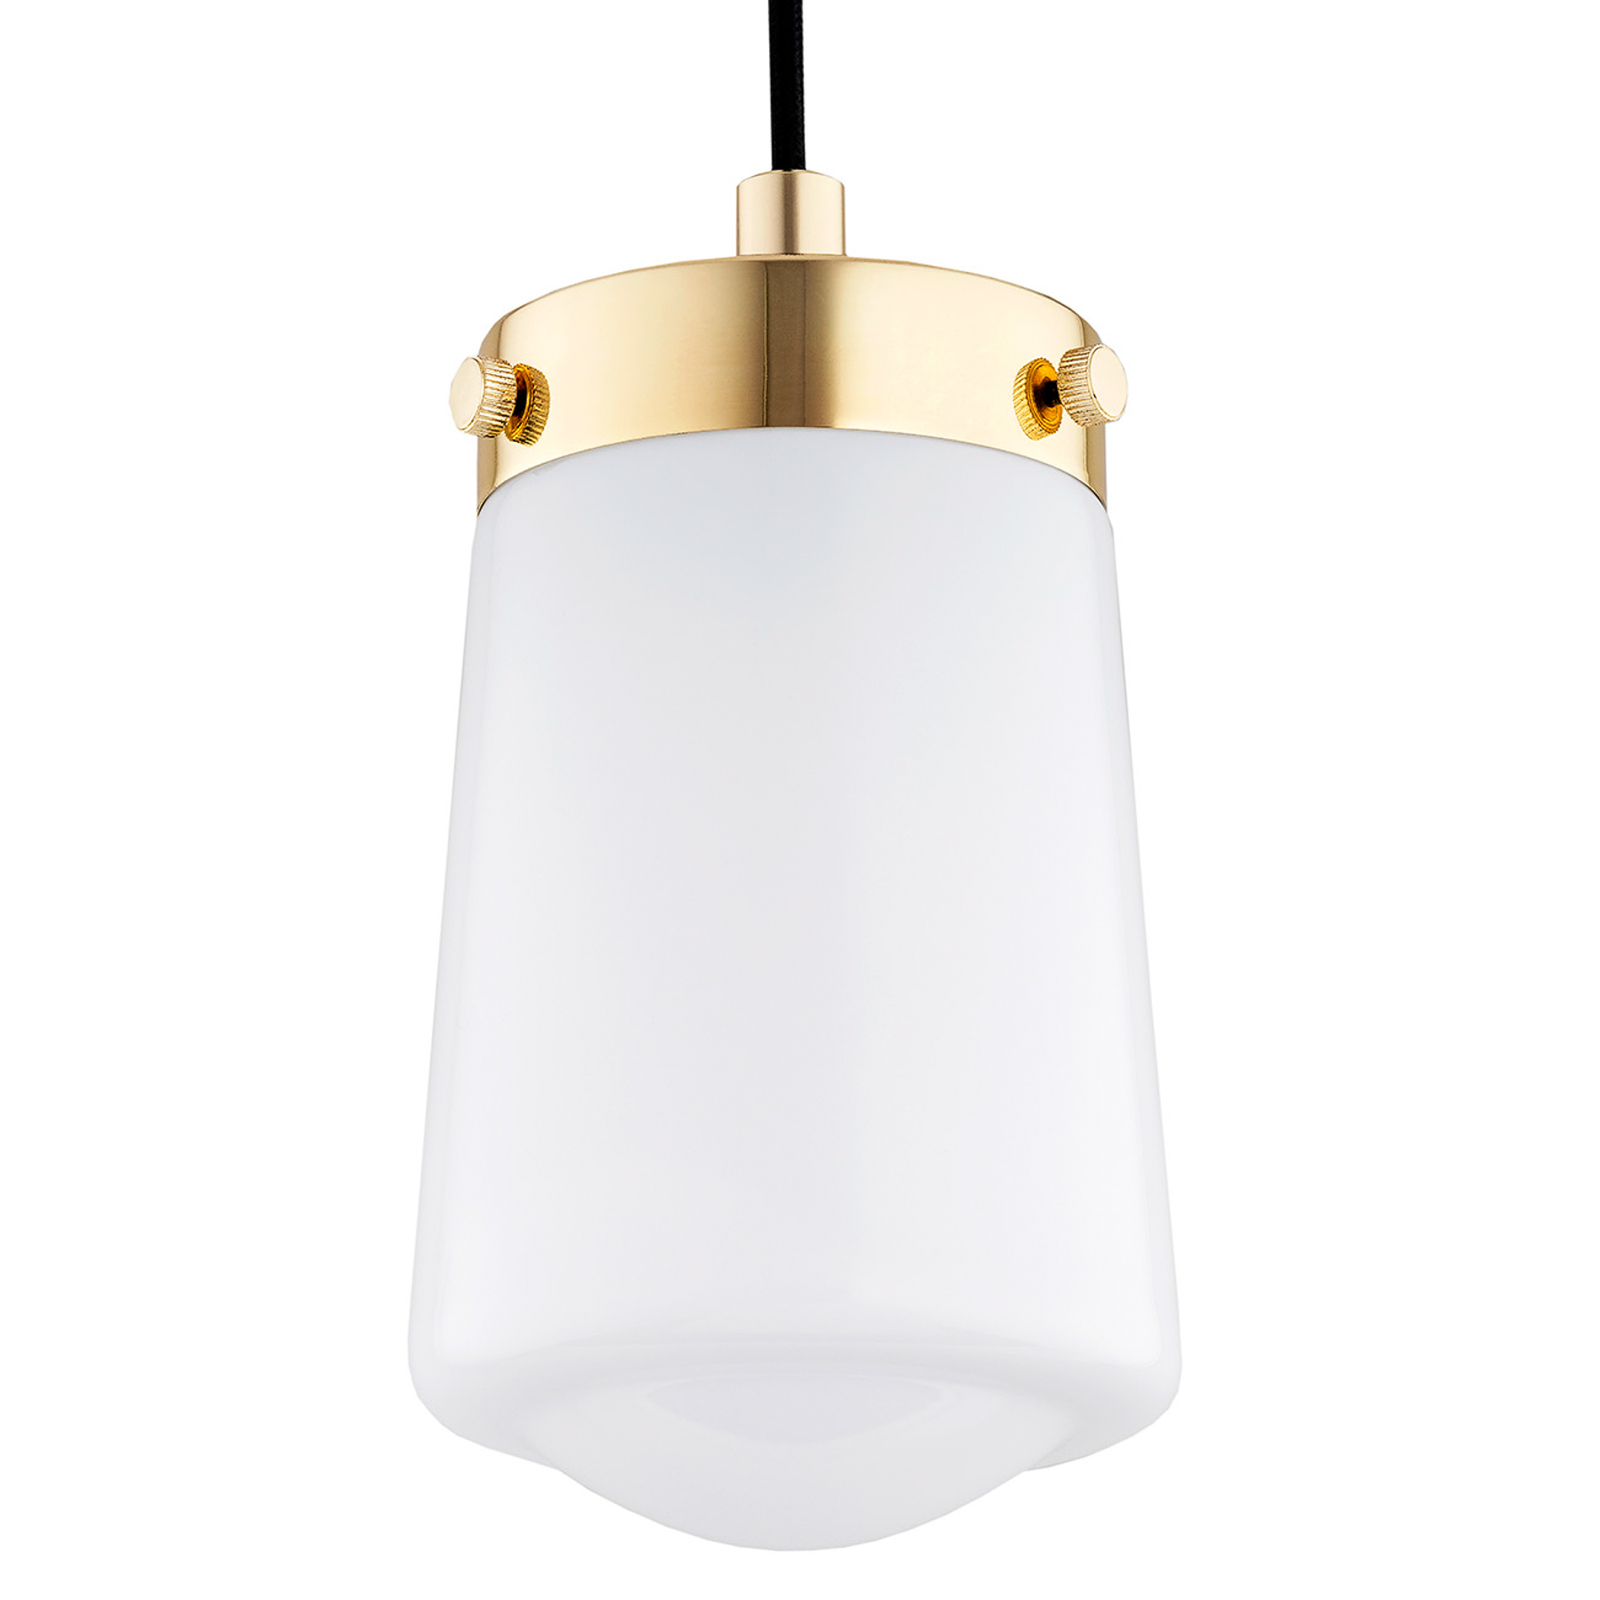 Pasadena pendant light, 1-bulb, brass/white